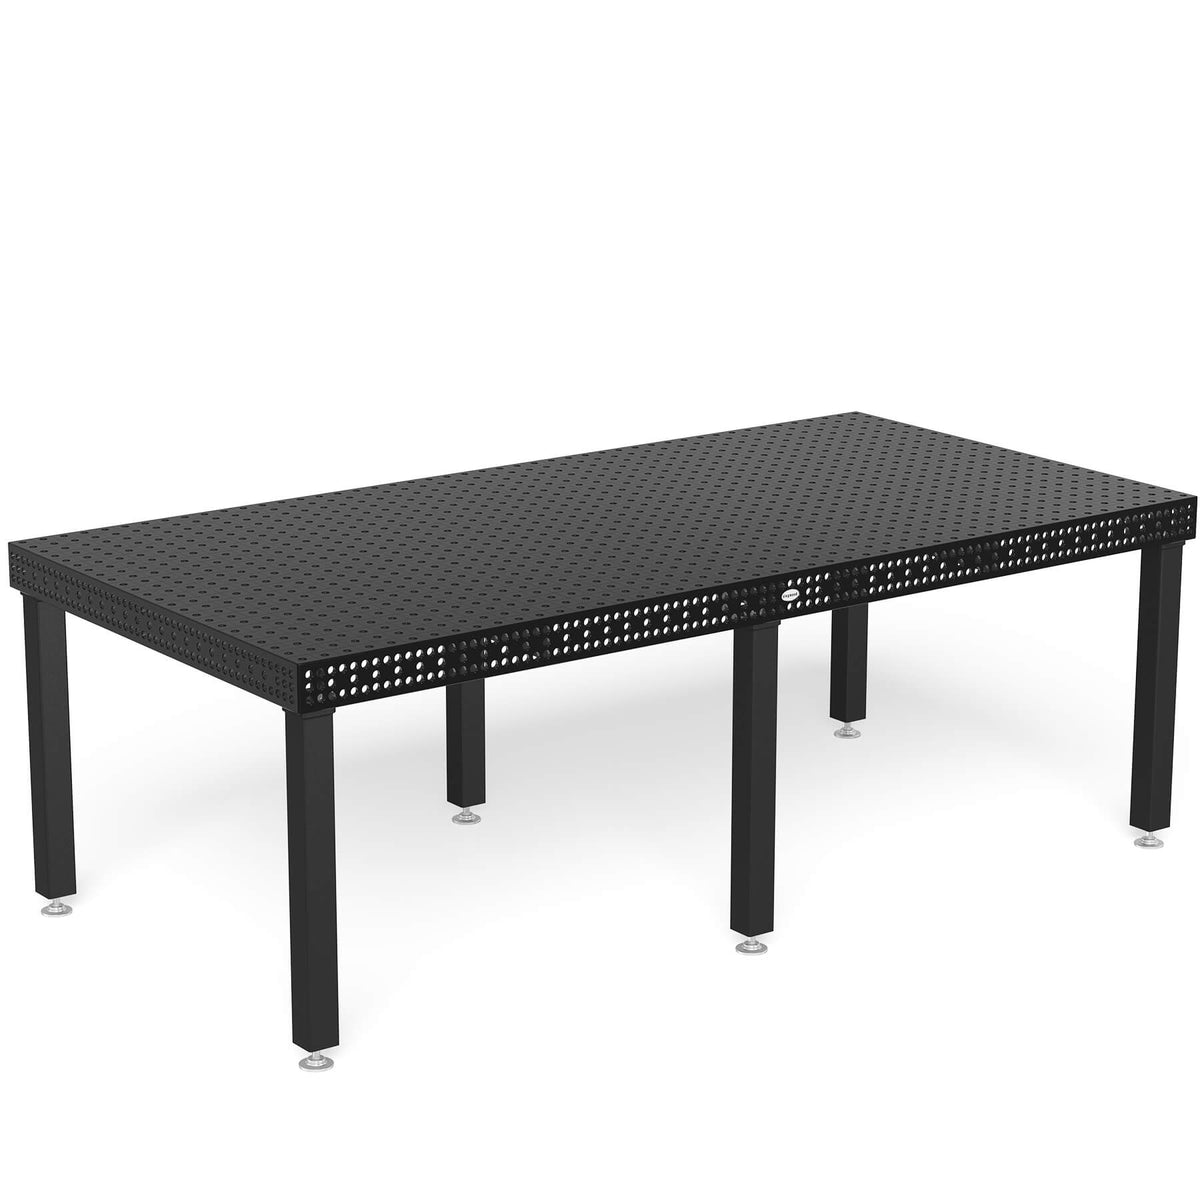 4-160030.X7D: Siegmund 2,400x1,200mm 8.7 Series System 16 Welding Table